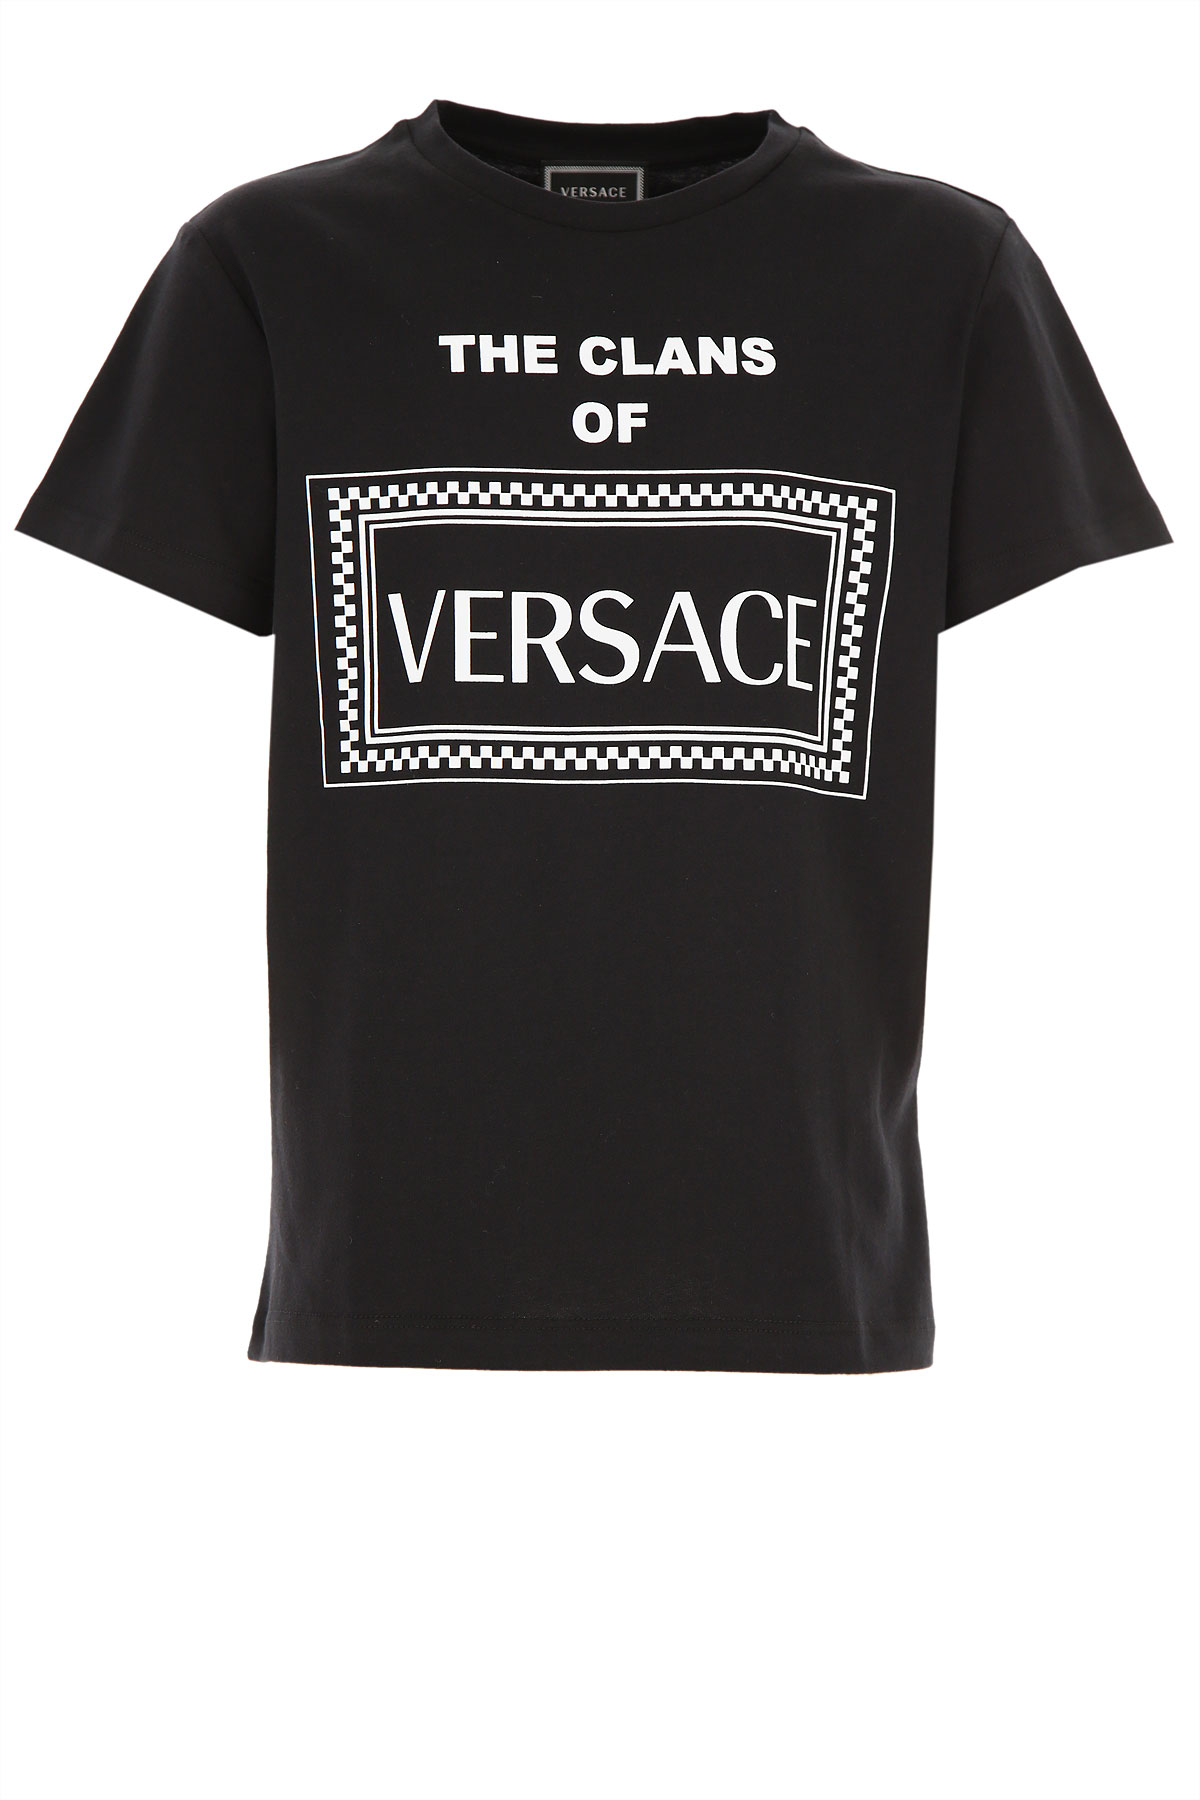 Versace Kinder T-Shirt für Jungen Günstig im Sale, Schwarz, Baumwolle, 2017, 10Y 12Y 14Y 8Y